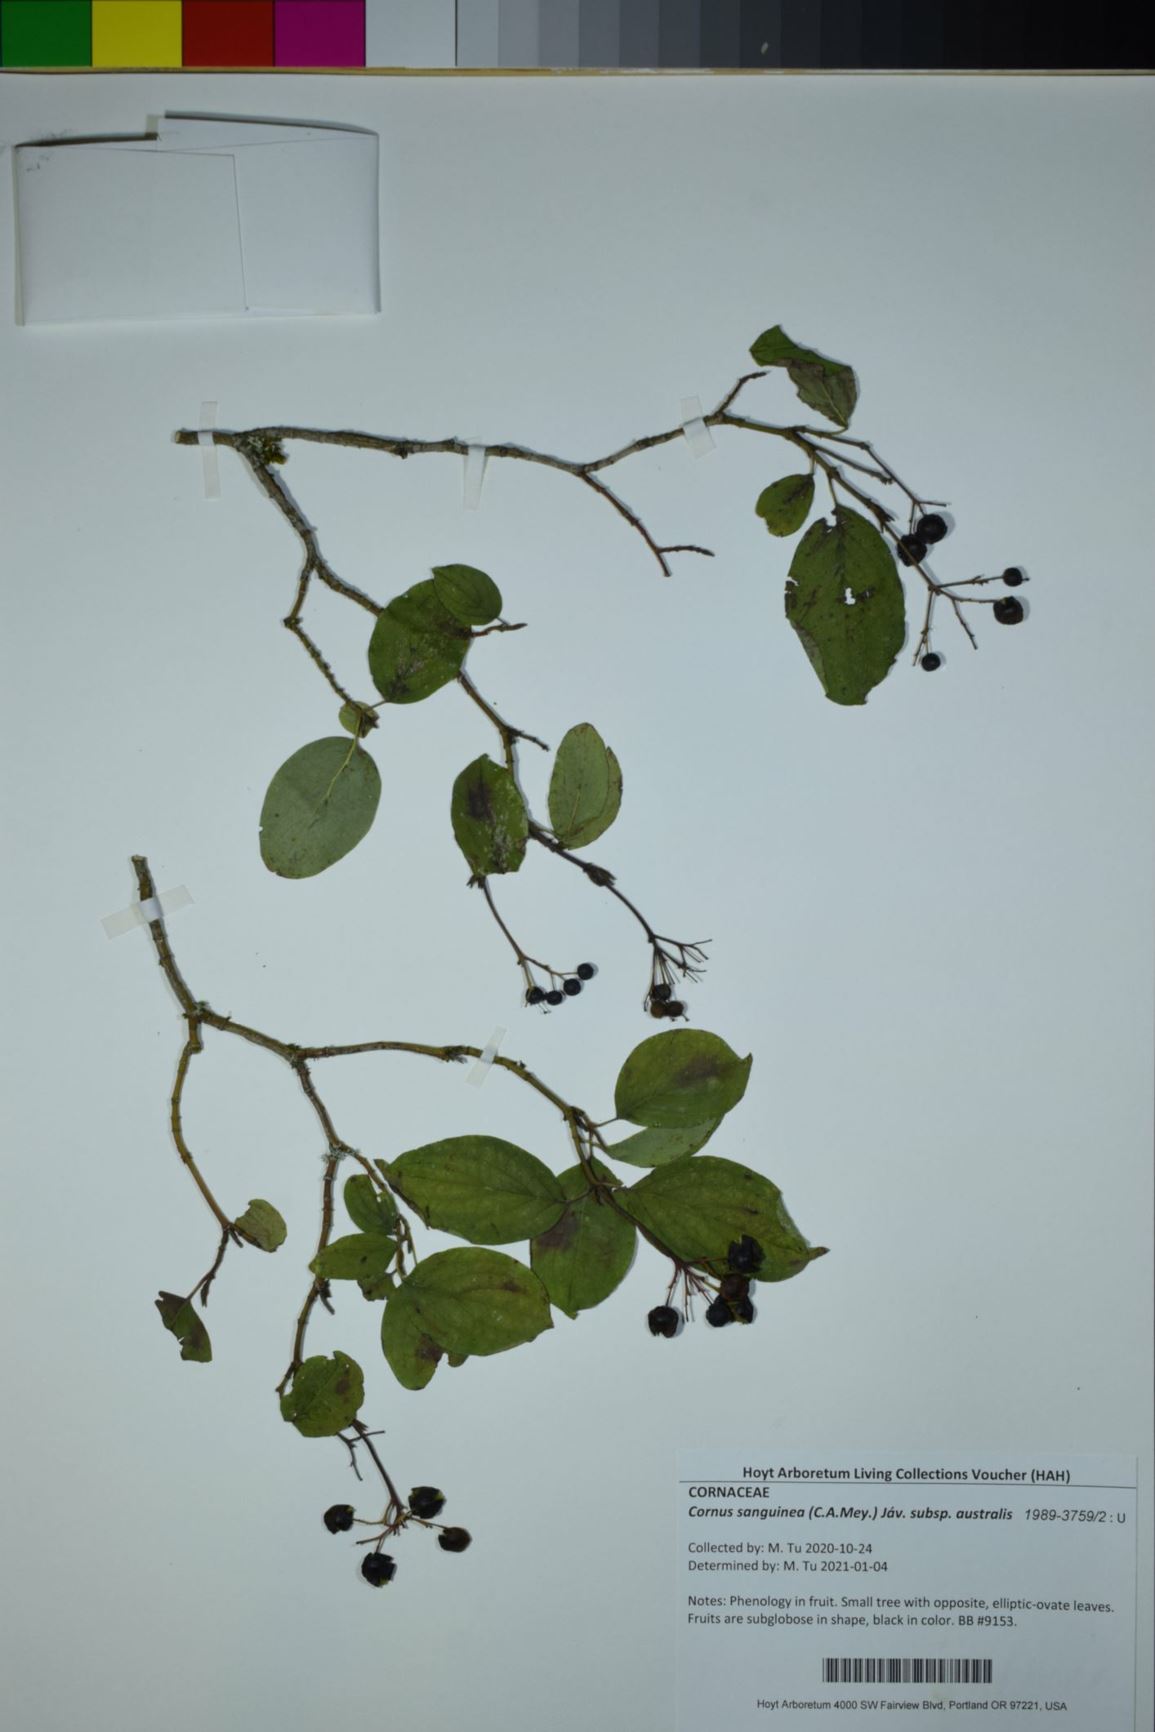 Cornus sanguinea subsp. australis - European Dogwood